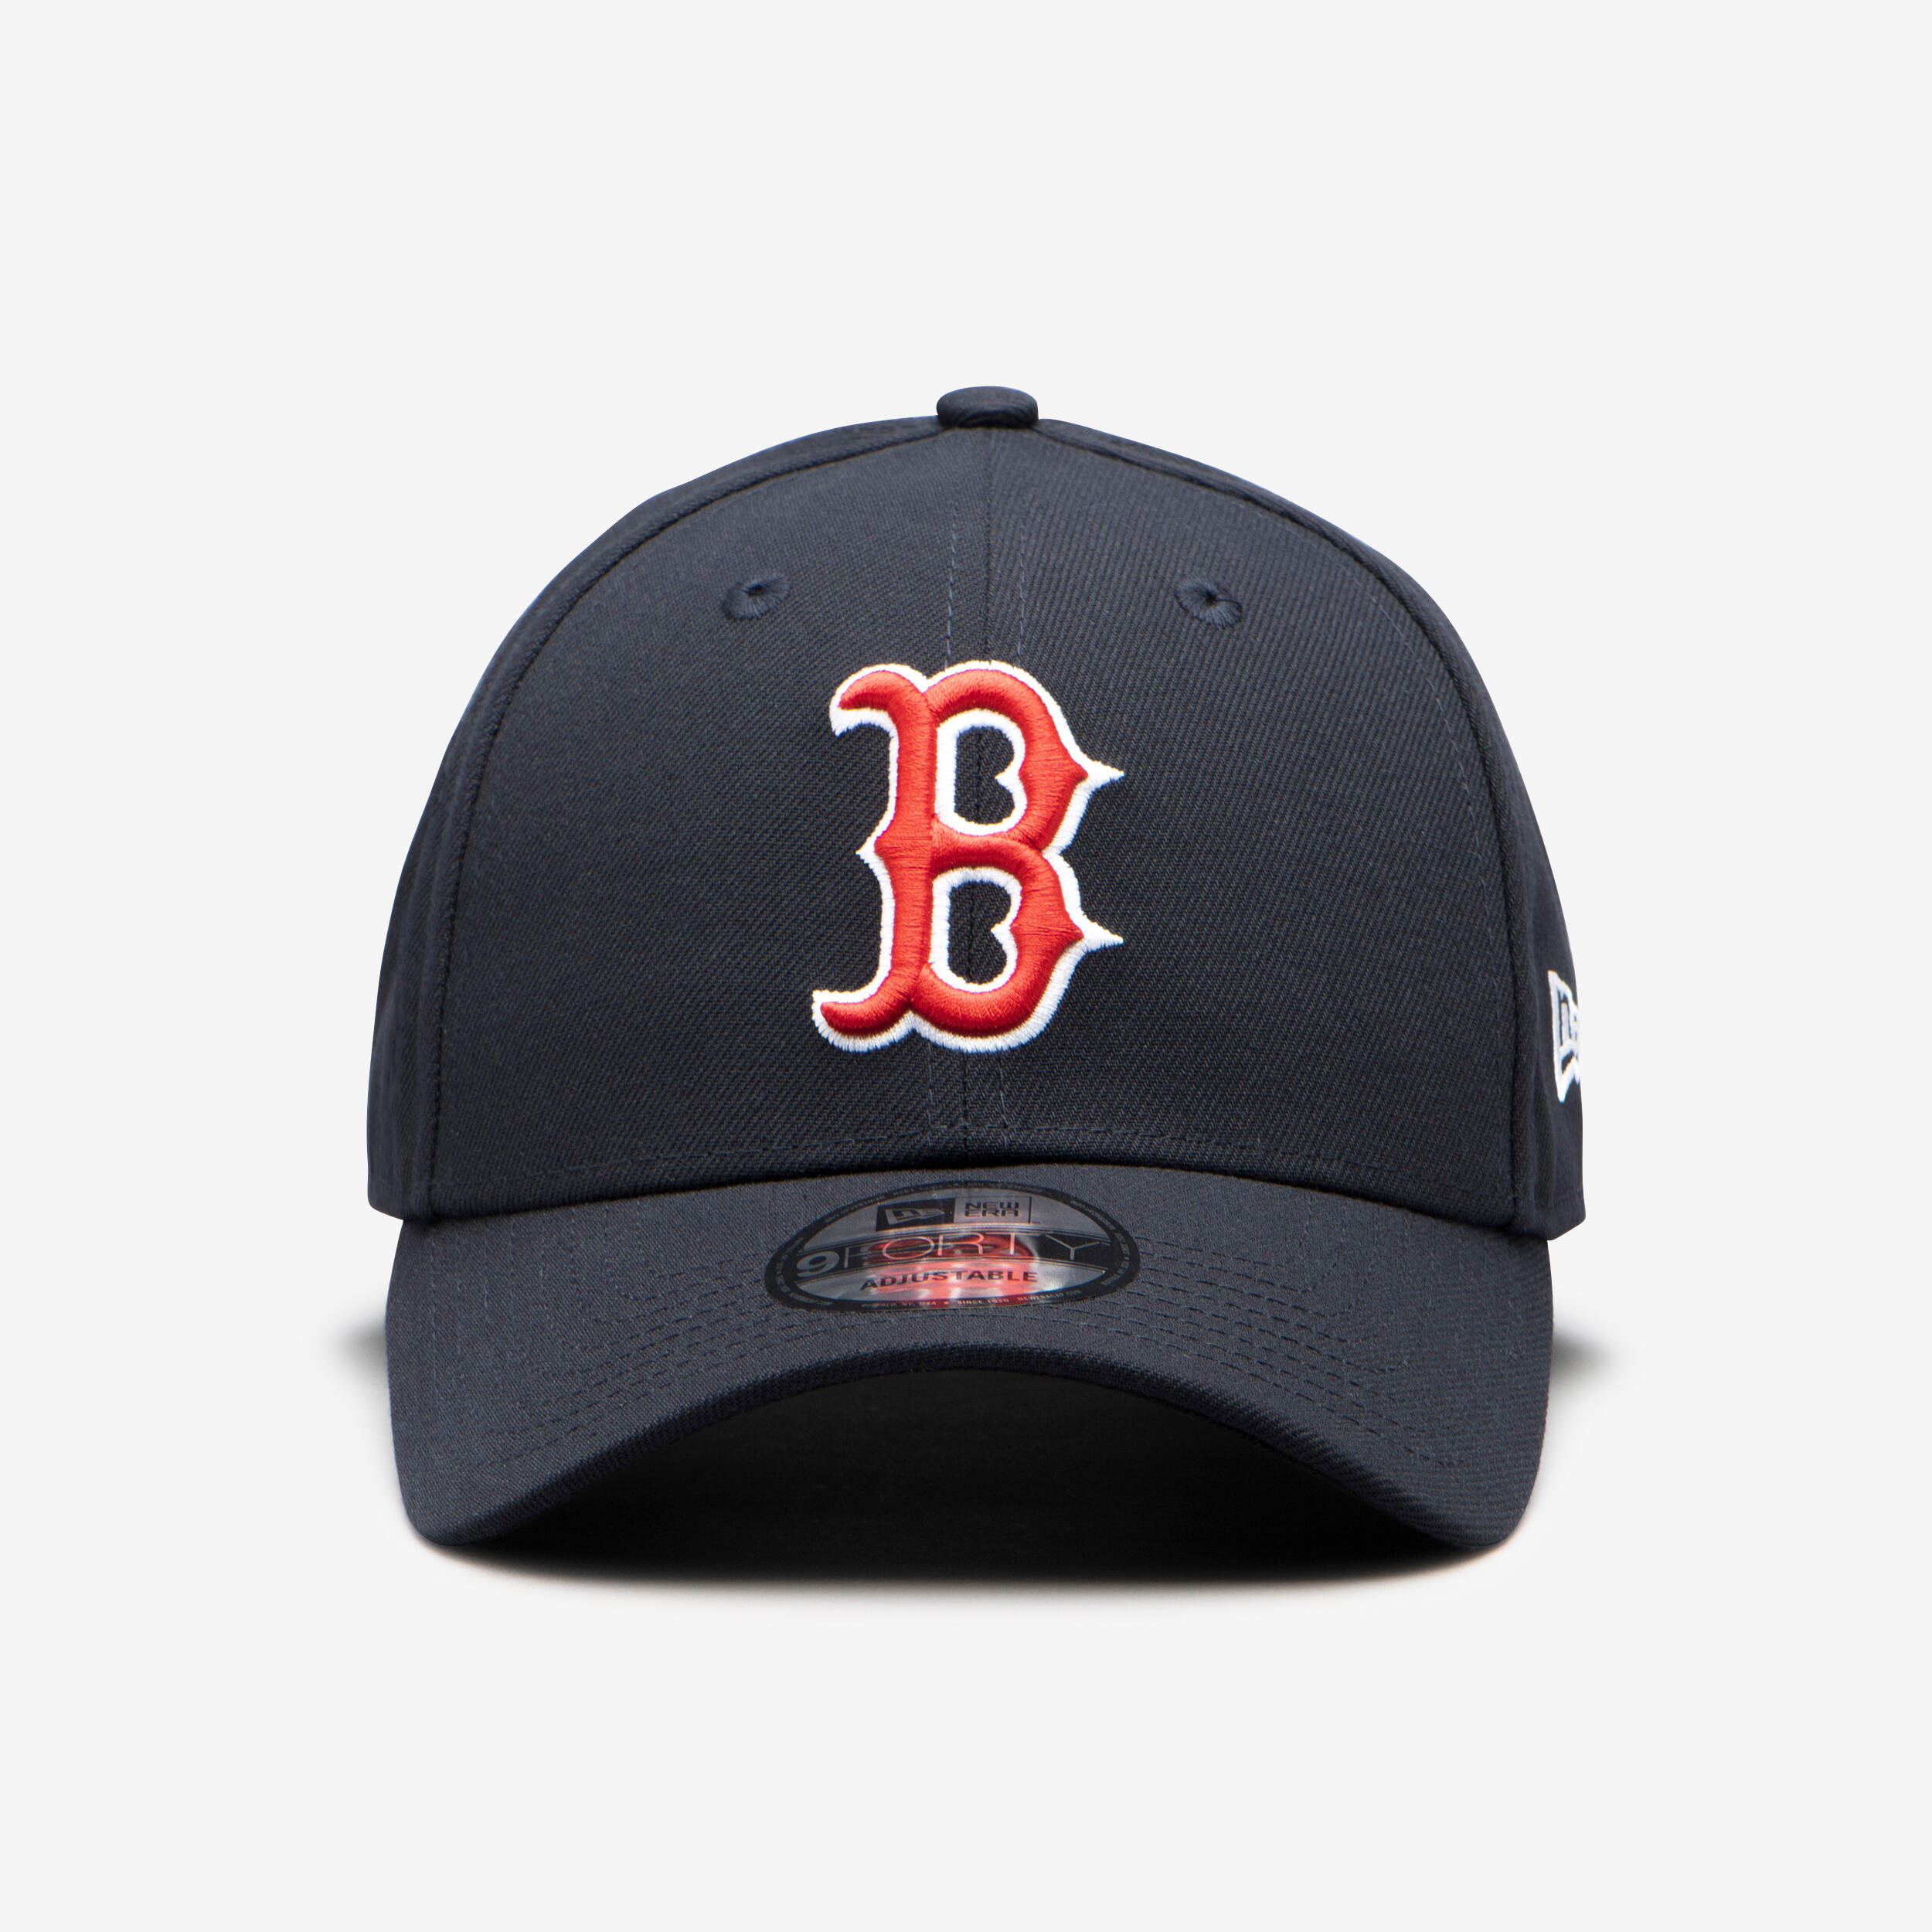 NEW ERA Casquette Baseball Mlb Homme / Femme - Boston Red Sox Bleu